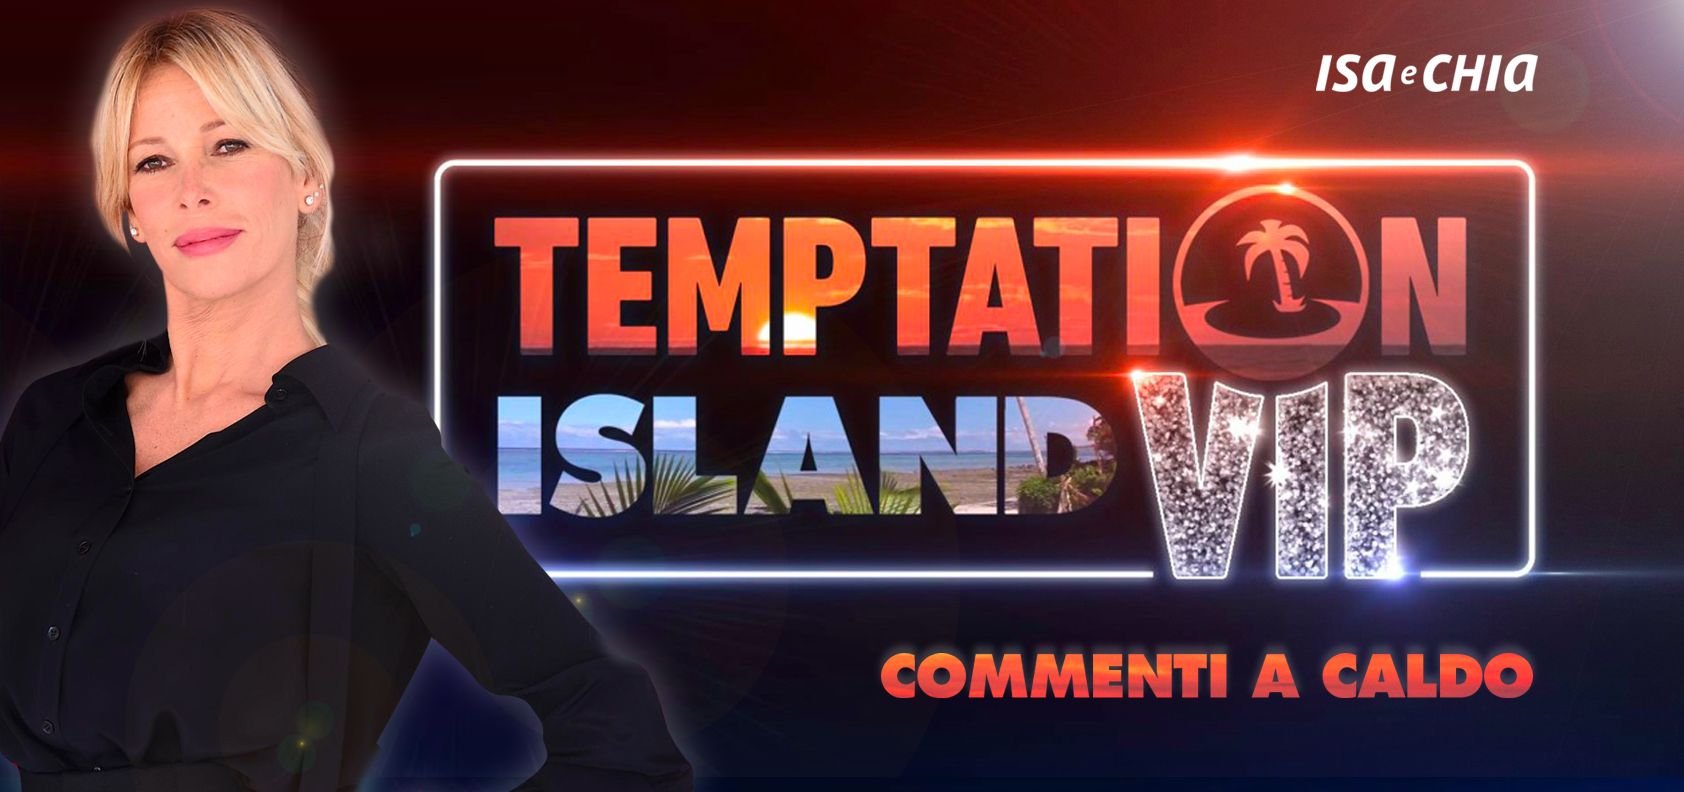 ‘Temptation Island Vip 2’, terza puntata: commenti a caldo